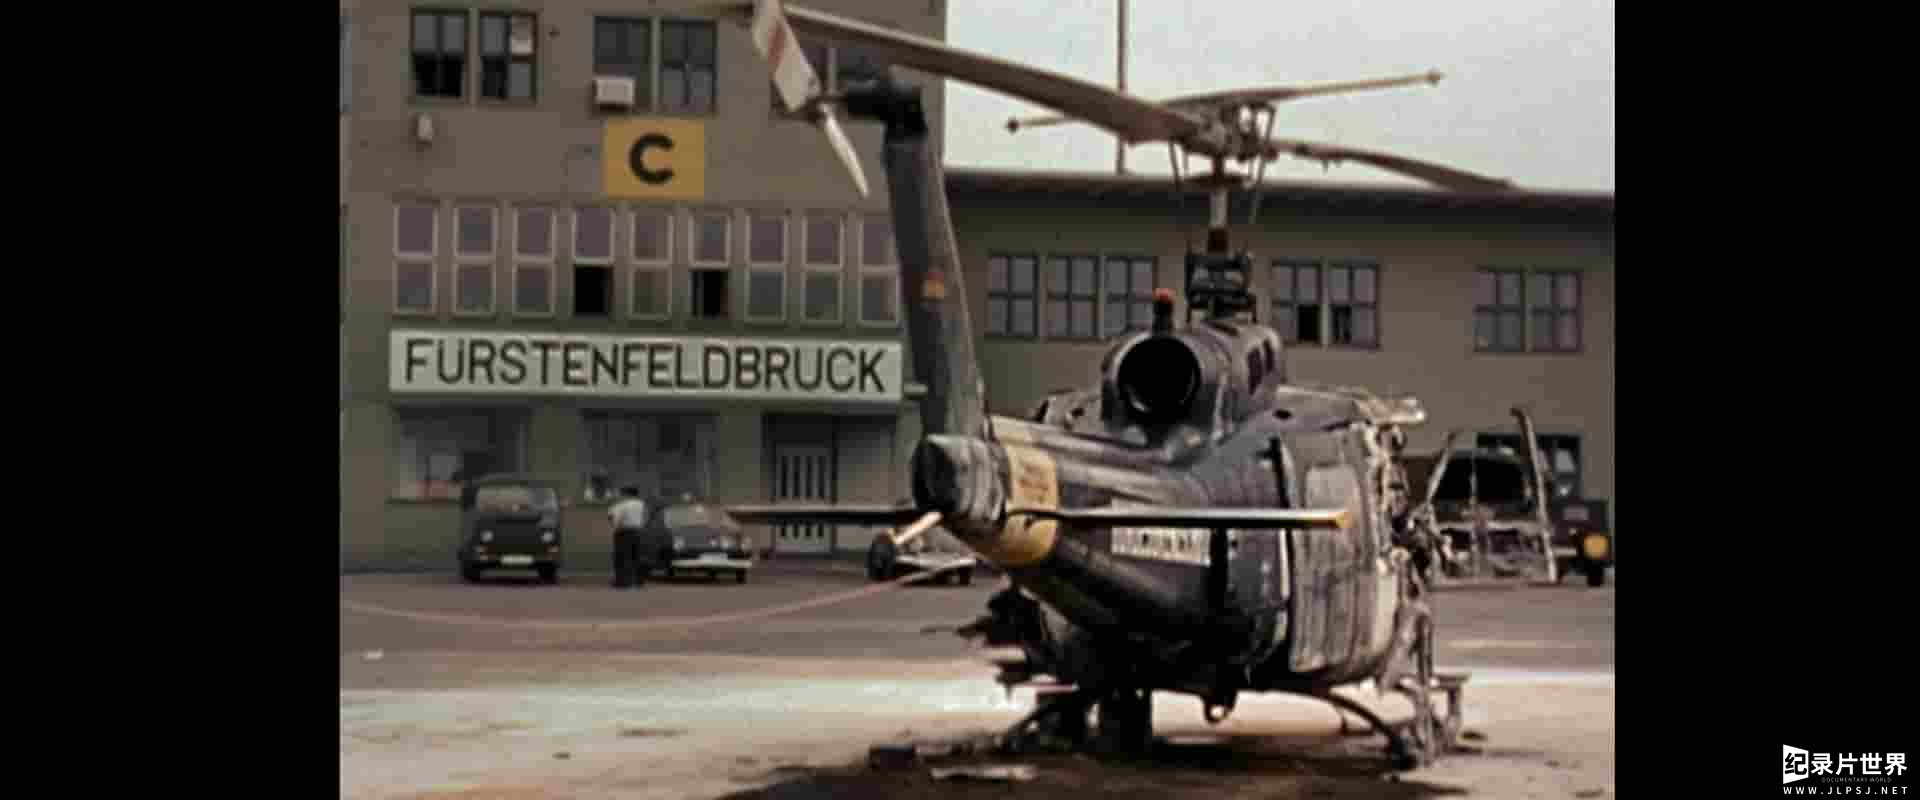  德国纪录片《1972: 慕尼黑的黑九月 1972: Munich's Black September》全1集